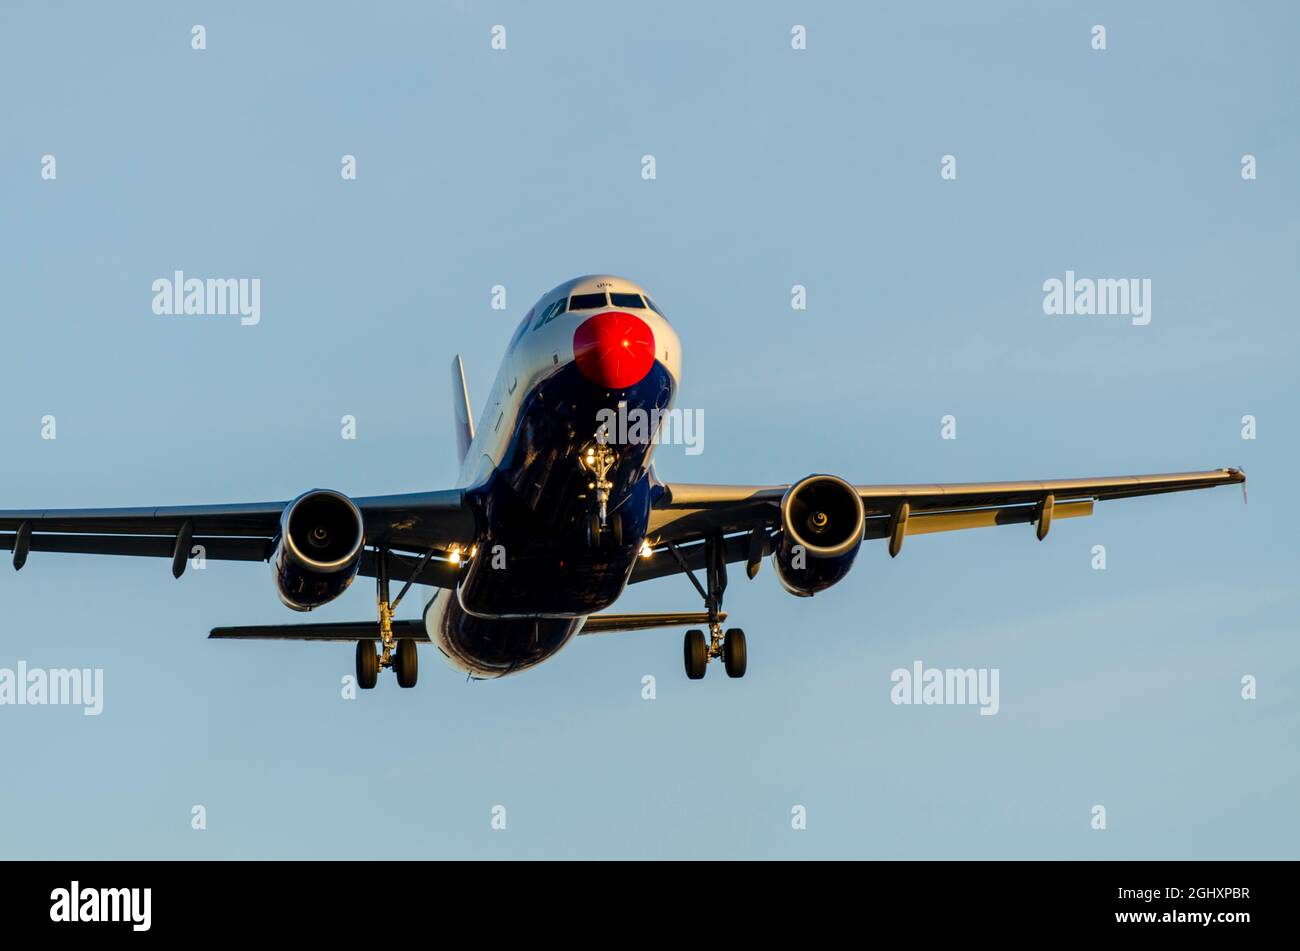 Avion-avion de ligne Airbus A320 de British Airways G-EUUK avec un nez rouge pour le Comic relief Red Nose Day, atterrissage à l'aéroport de Londres Heathrow, Royaume-Uni Banque D'Images